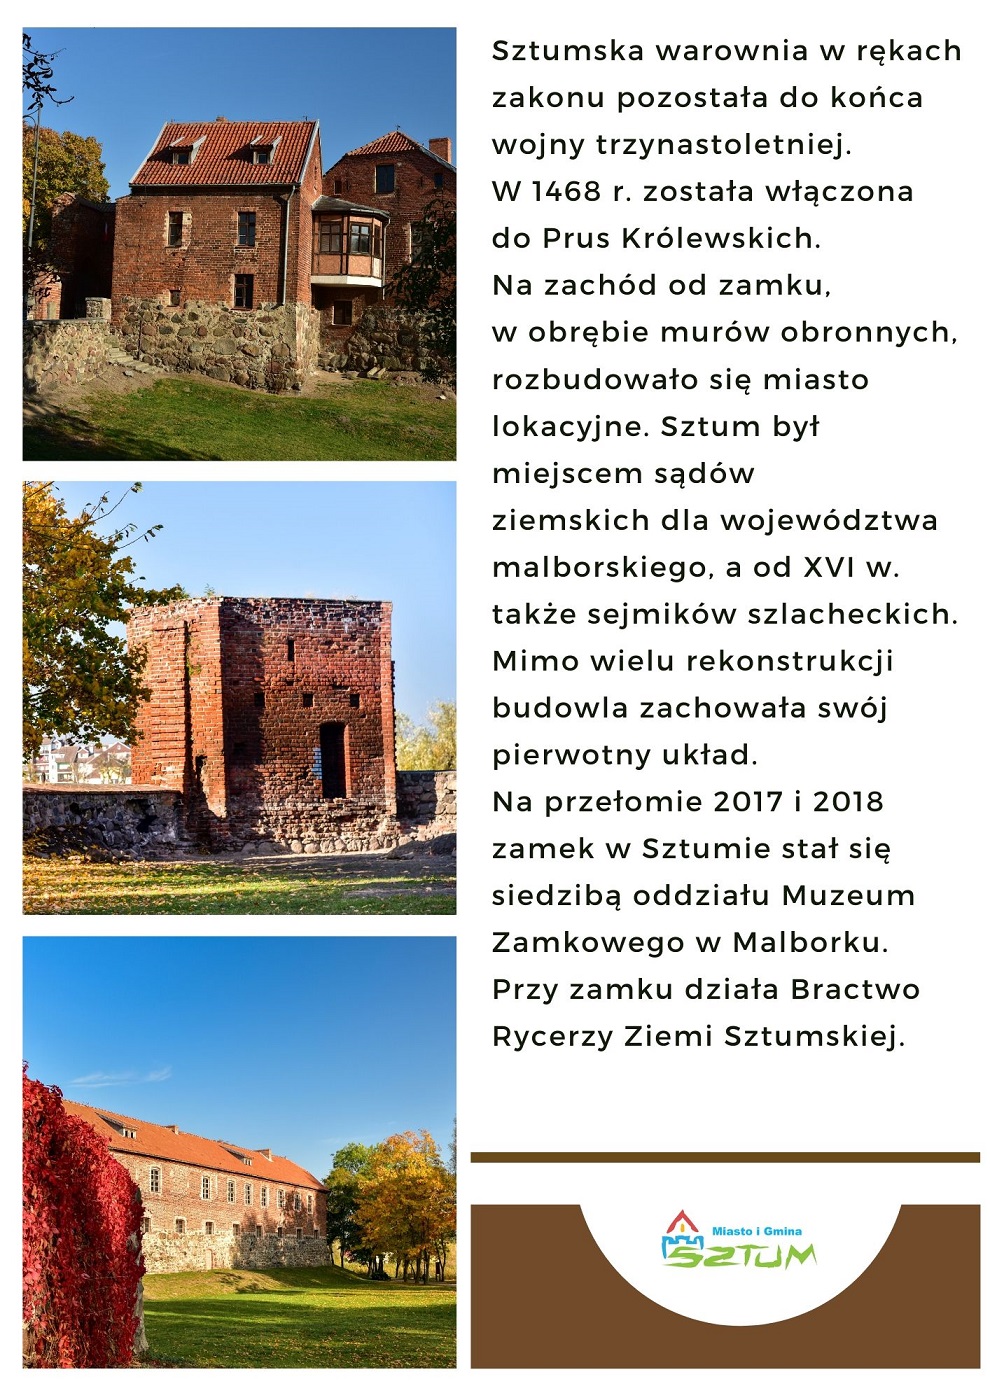 Zamek W Sztumie Umig W Sztumie 6316